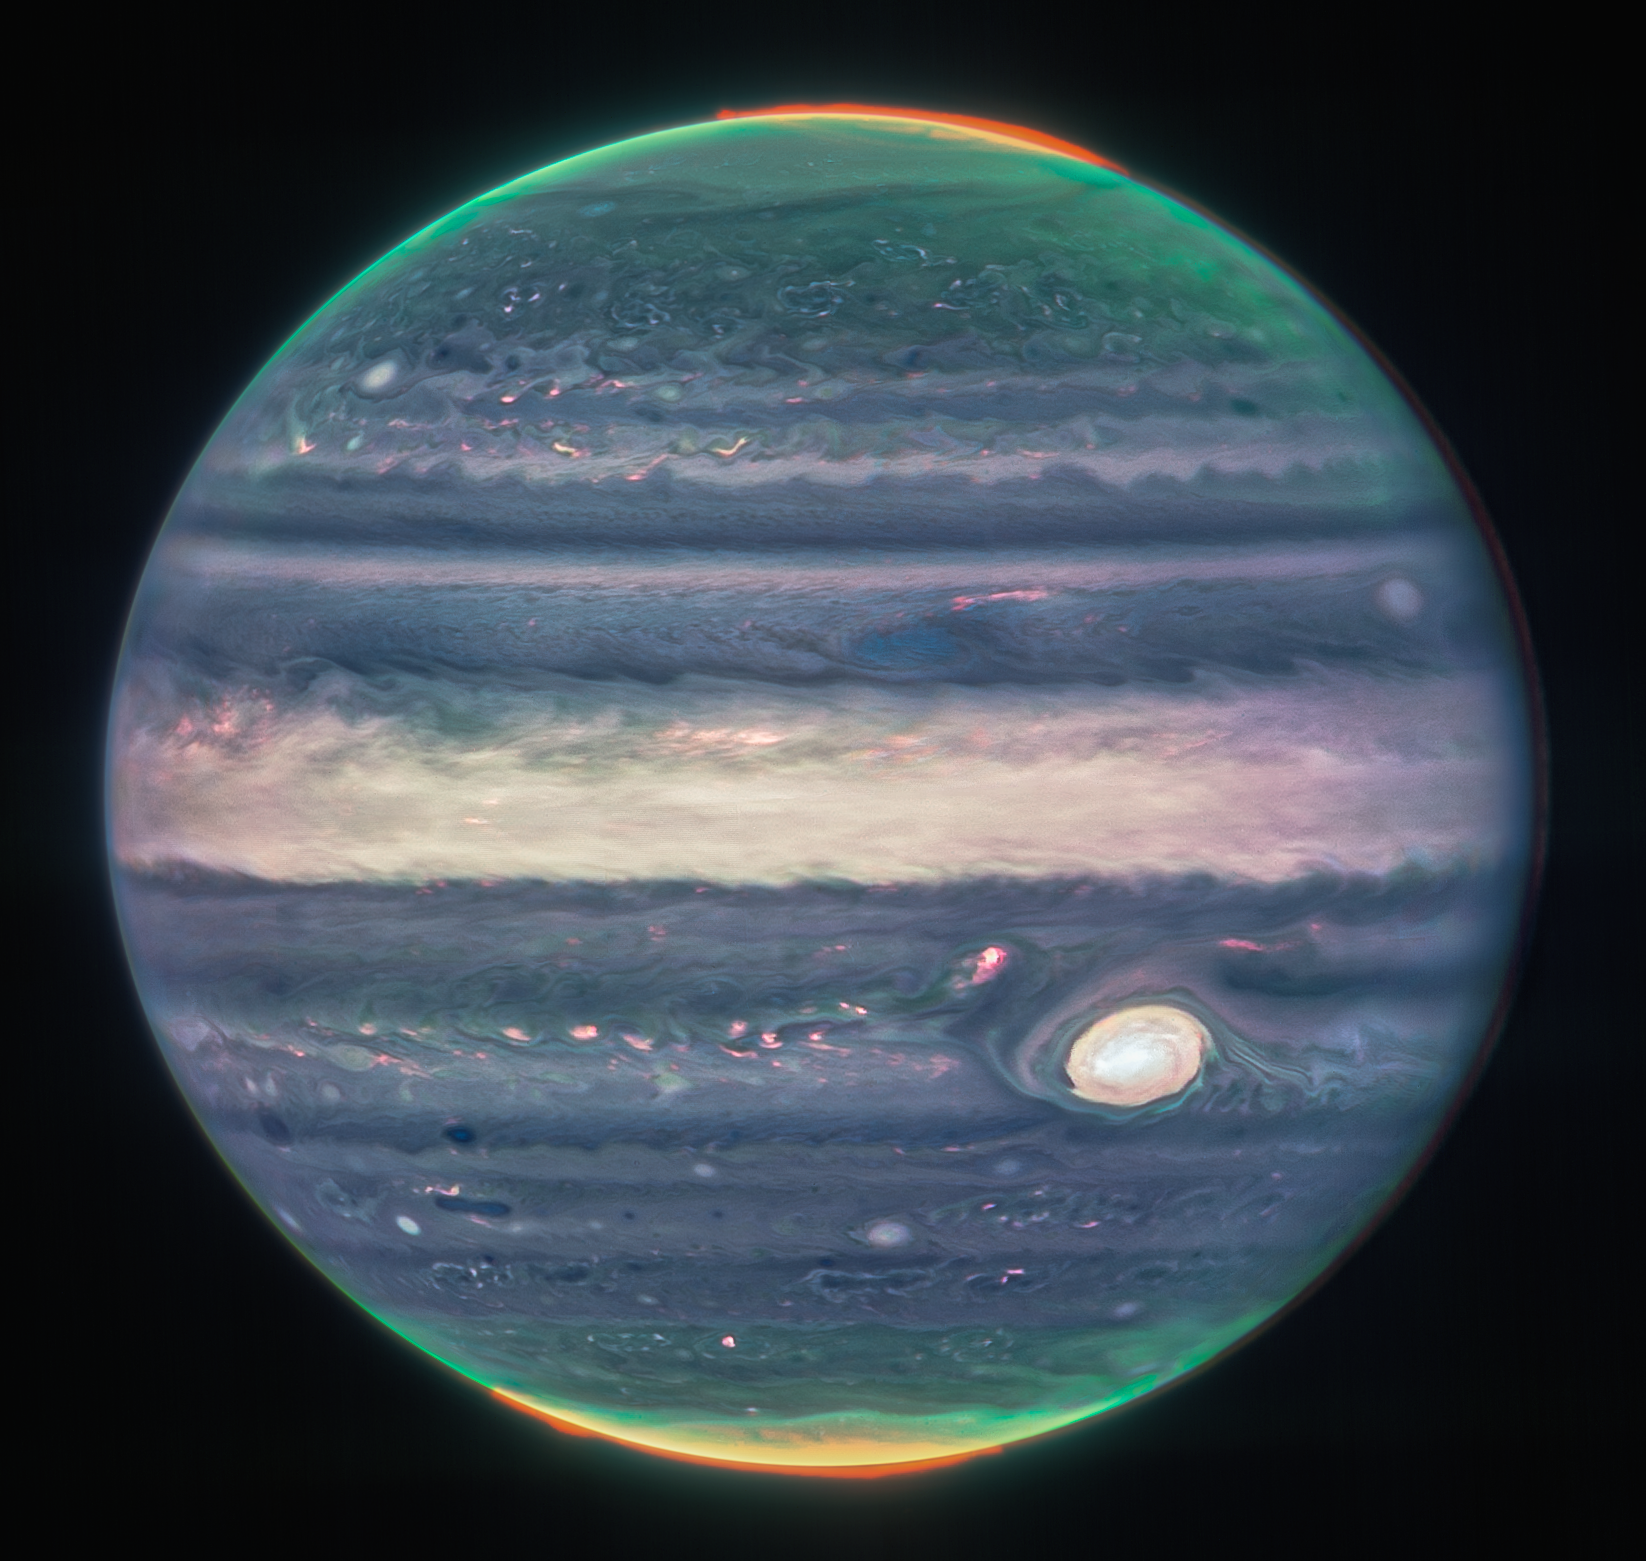 Imagen compuesta de Júpiter del instrumento NIRCam de Webb, a partir de tres filtros y alineación debido a la rotación del planeta. Crédito: NASA, ESA, Equipo ERS de Jupiter; procesamiento de imágenes por Judy Schmidt.